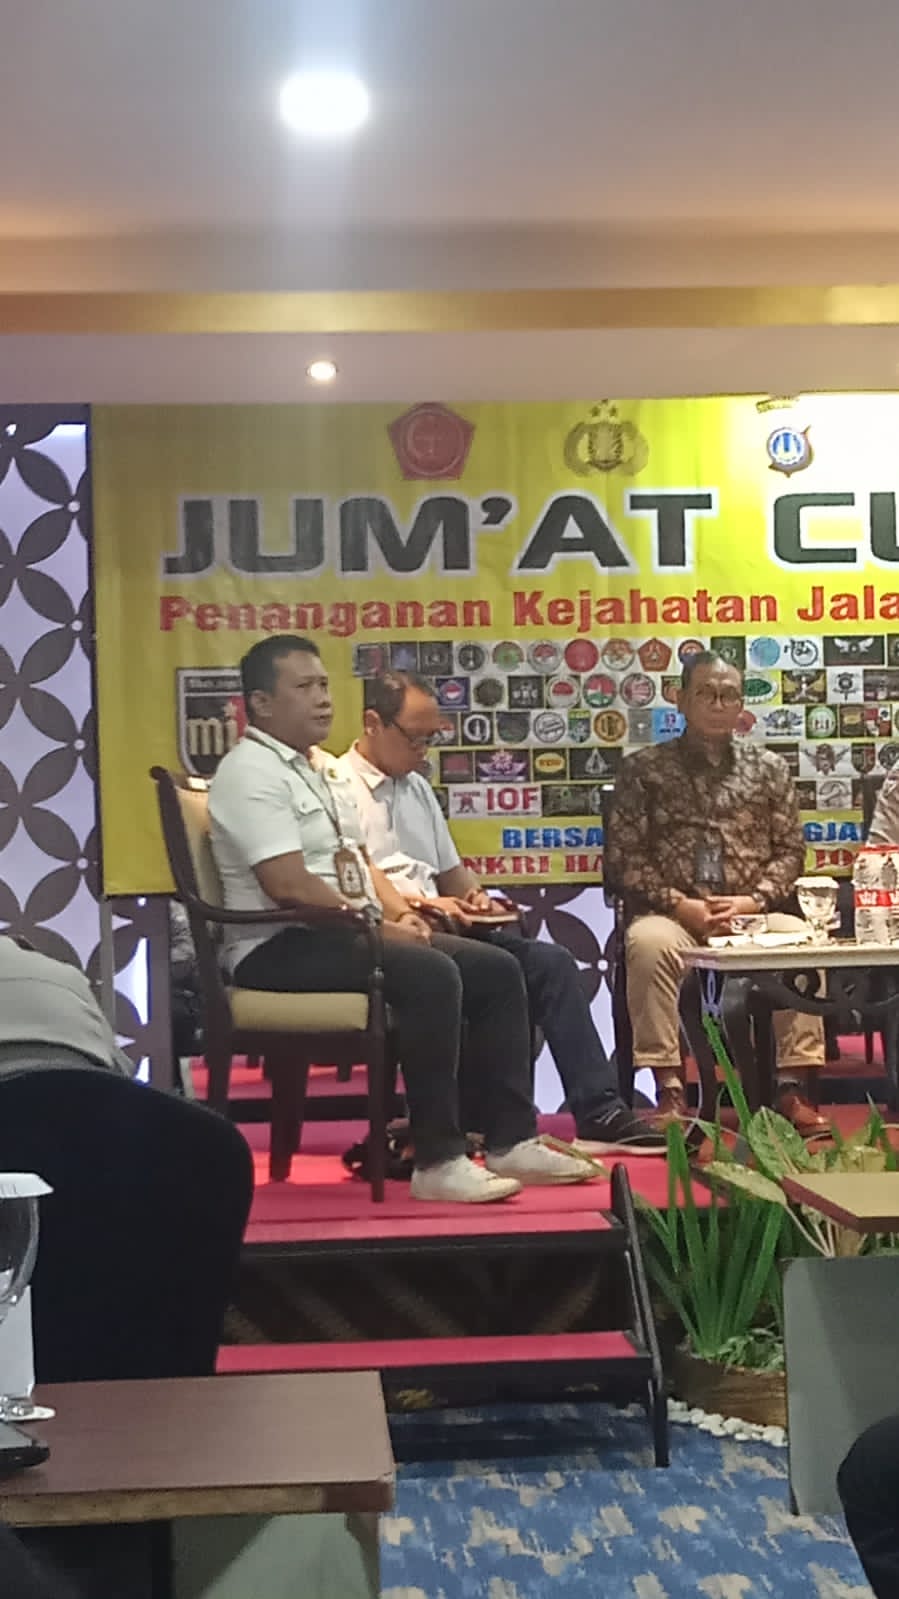 Forum Jum’at Curhat bersama Kapolda dan Gubernur DIY